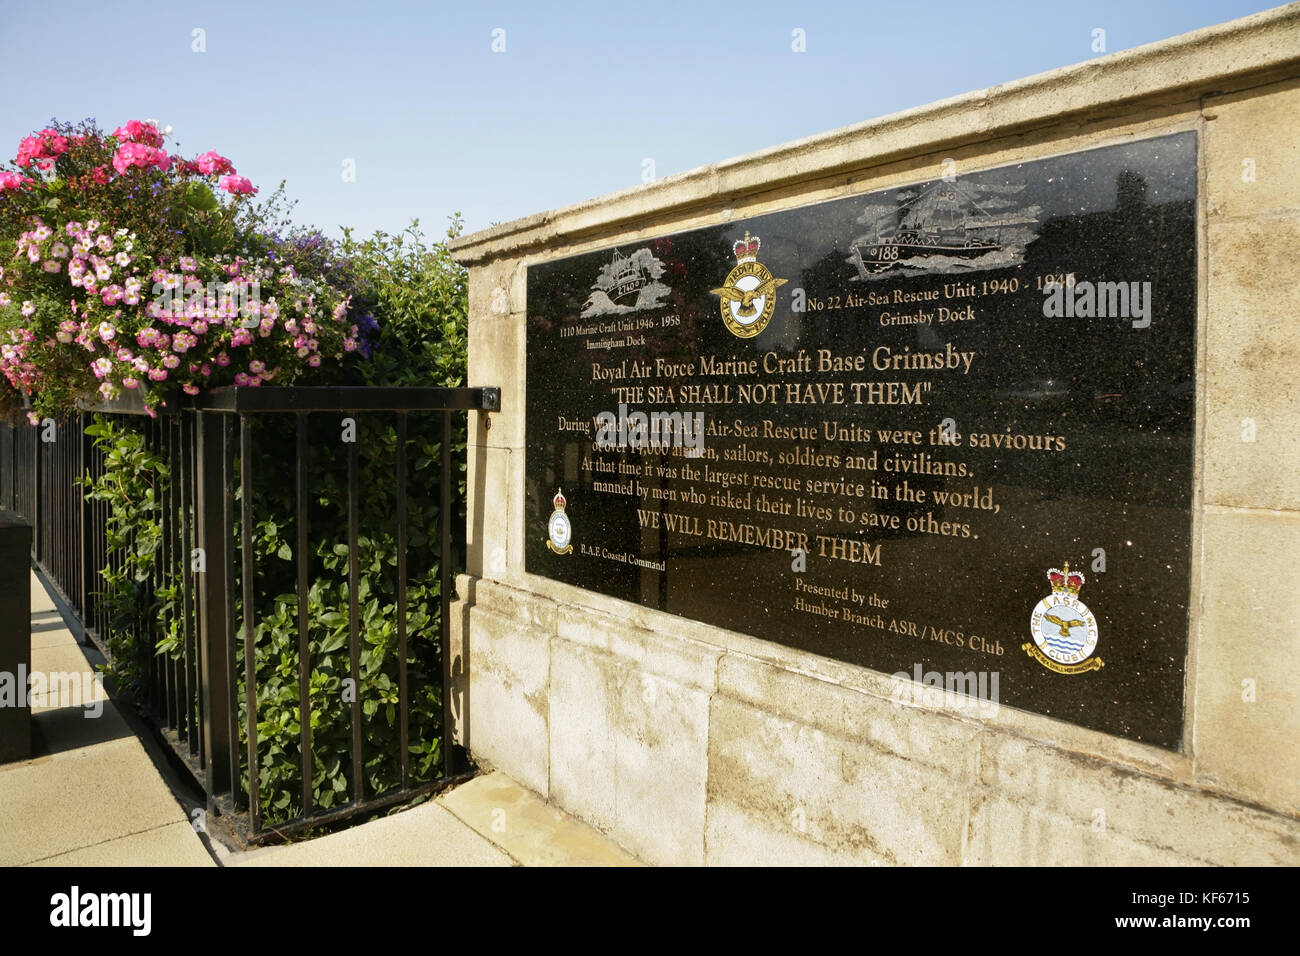 Monumento de piedra a la RAF rescate aire-mar embarcaciones base, Grimsby, en Cleethorpes, Reino Unido. Foto de stock